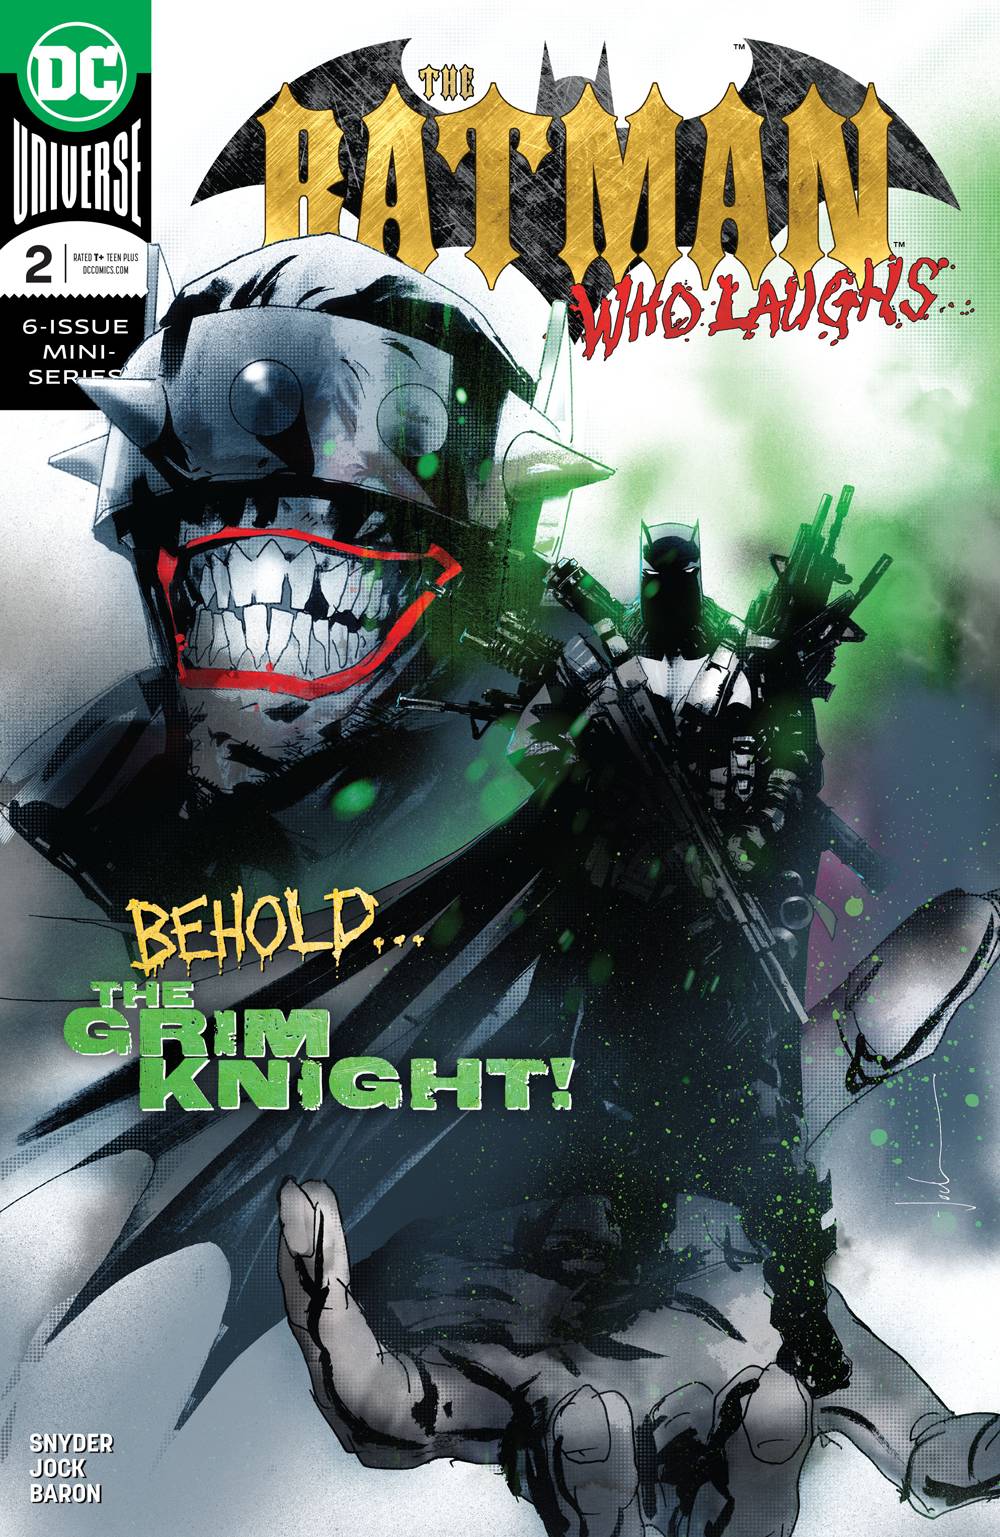 The Batman Who Laughs y Dark Knights: los mejores cómics y novelas gráficas de metal de enero de 2019